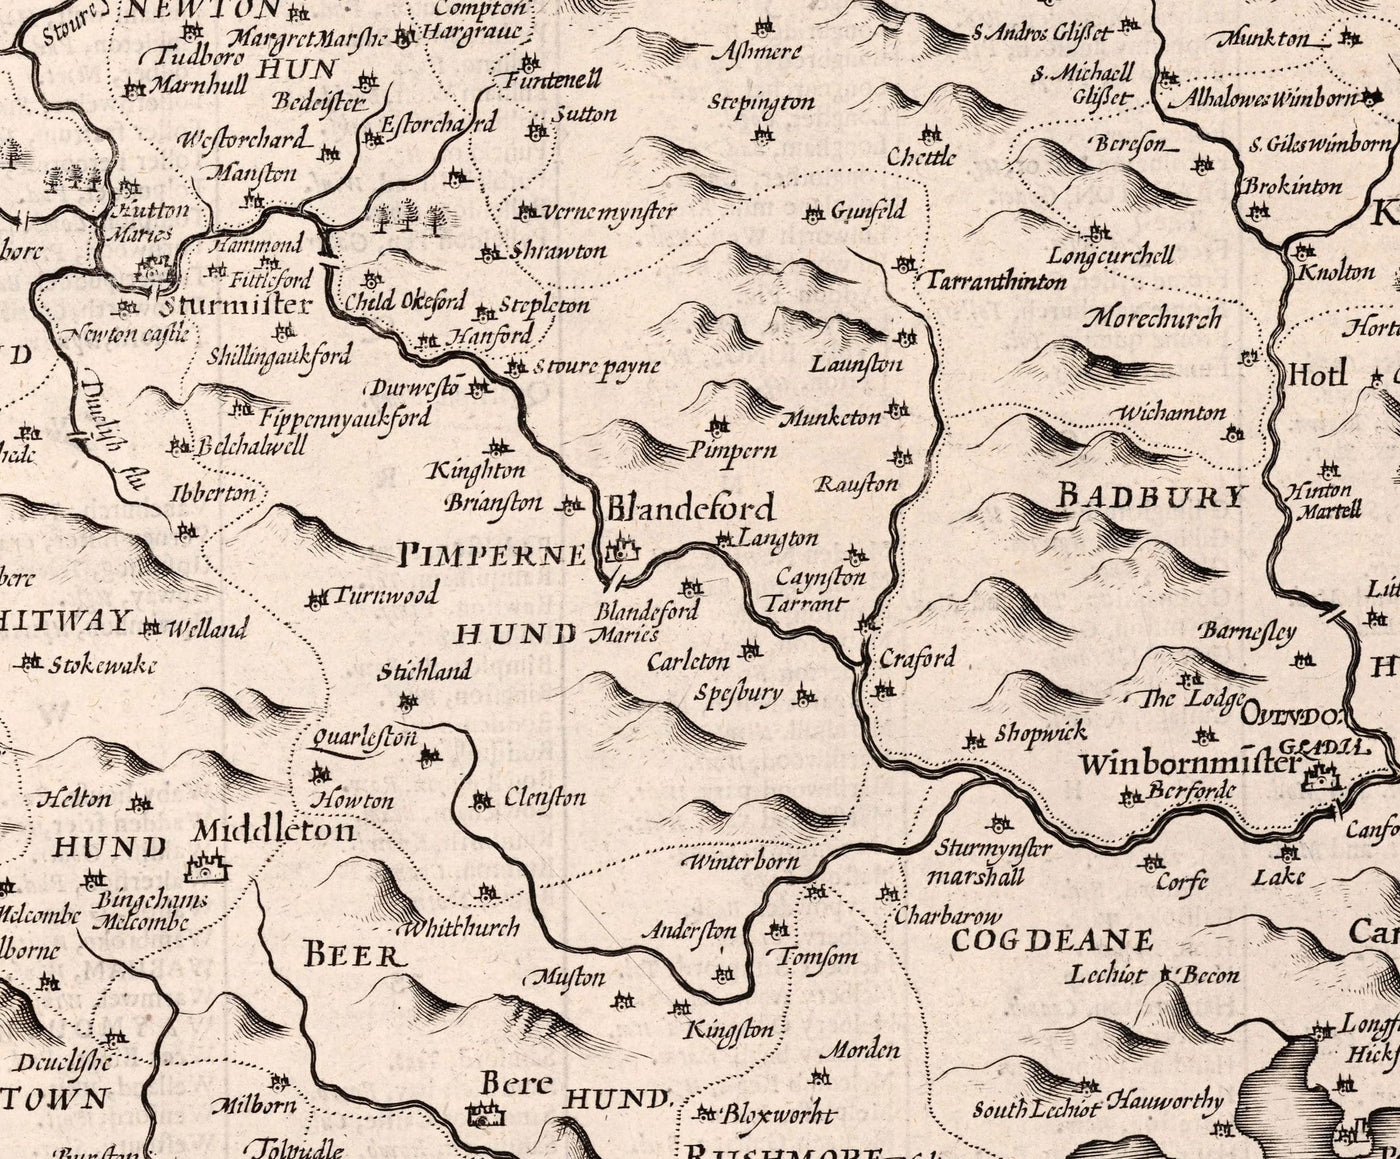 Ancienne carte de Dorset en 1611 par John Speed ​​- Poole, Weymouth, Dorchester, Bridport, Lyme Regis